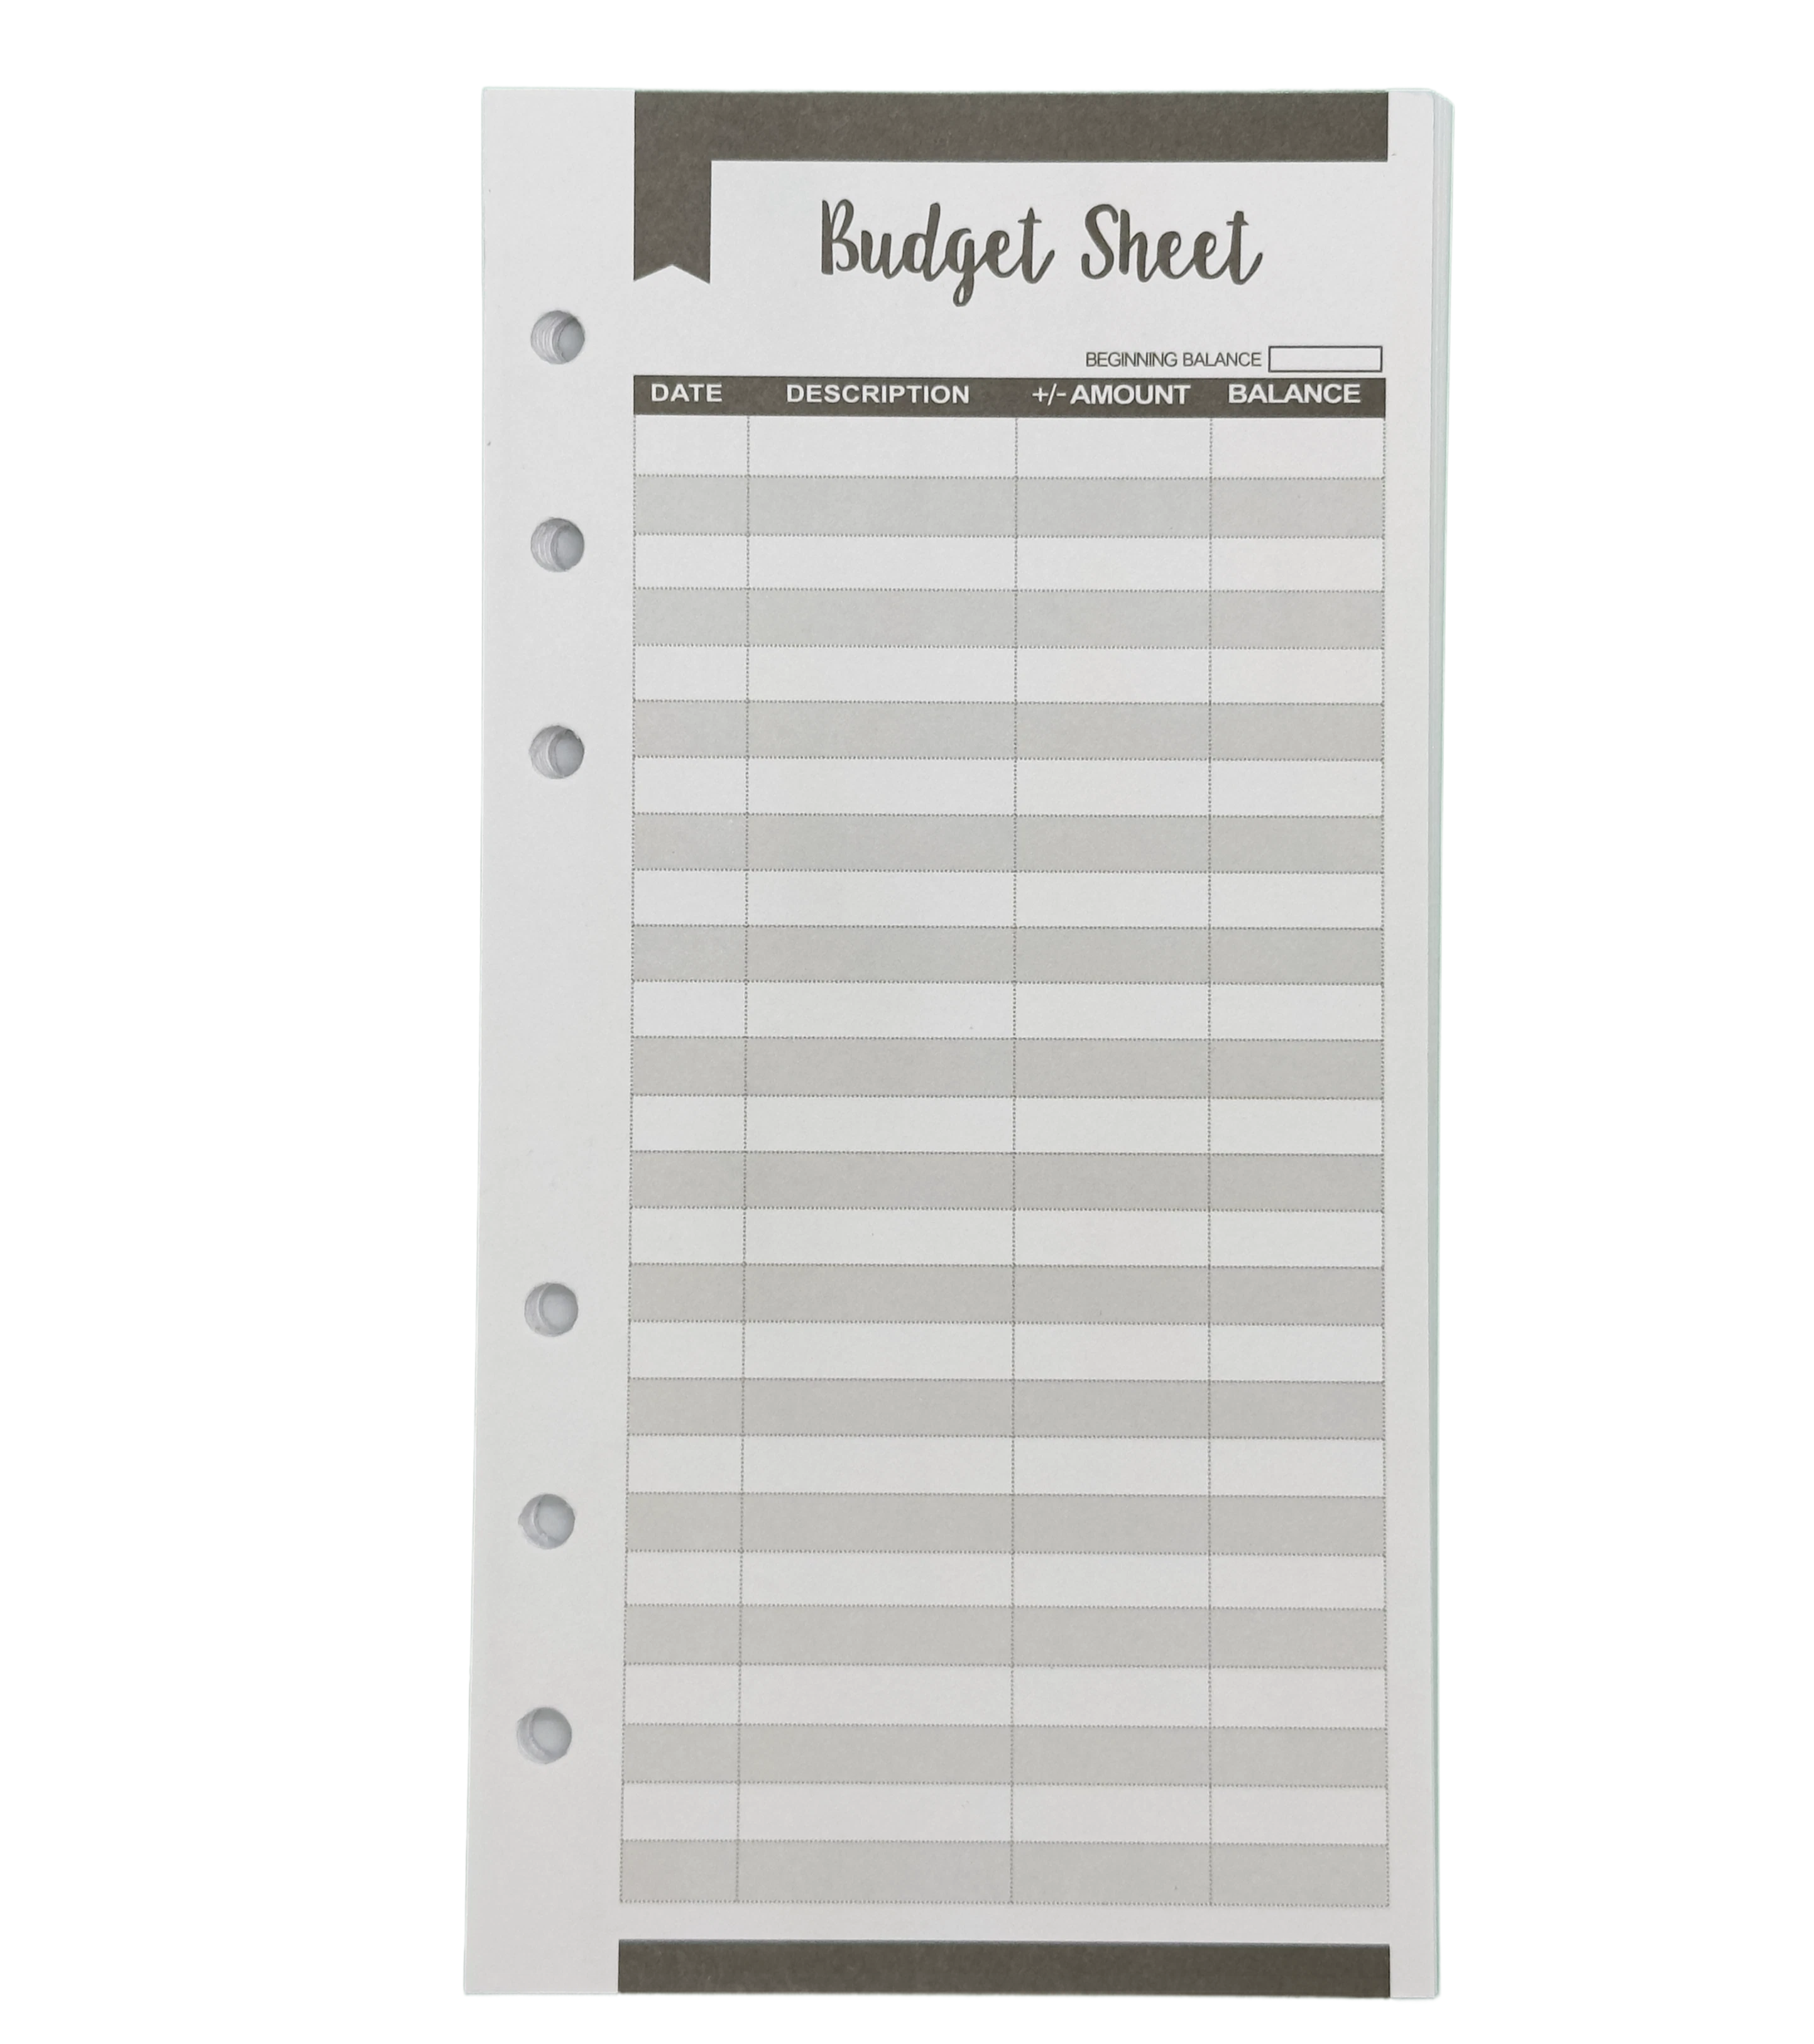 Budget Sheet als Tabelle 12 Hartpapier Blätter